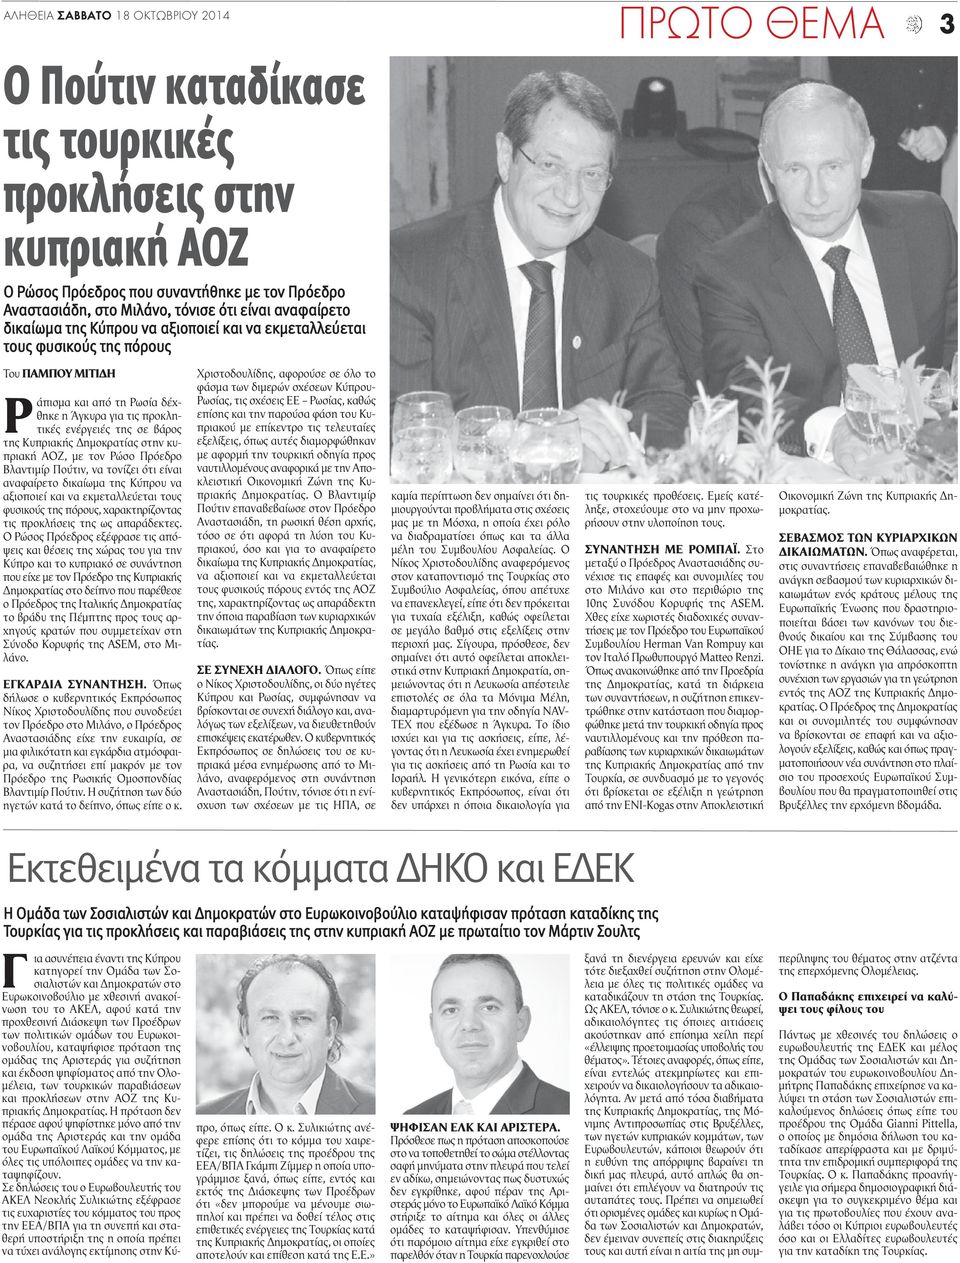 Κυπριακής Δημοκρατίας στην κυπριακή ΑΟΖ, με τον Ρώσο Πρόεδρο Βλαντιμίρ Πούτιν, να τονίζει ότι είναι αναφαίρετο δικαίωμα της Κύπρου να αξιοποιεί και να εκμεταλλεύεται τους φυσικούς της πόρους,